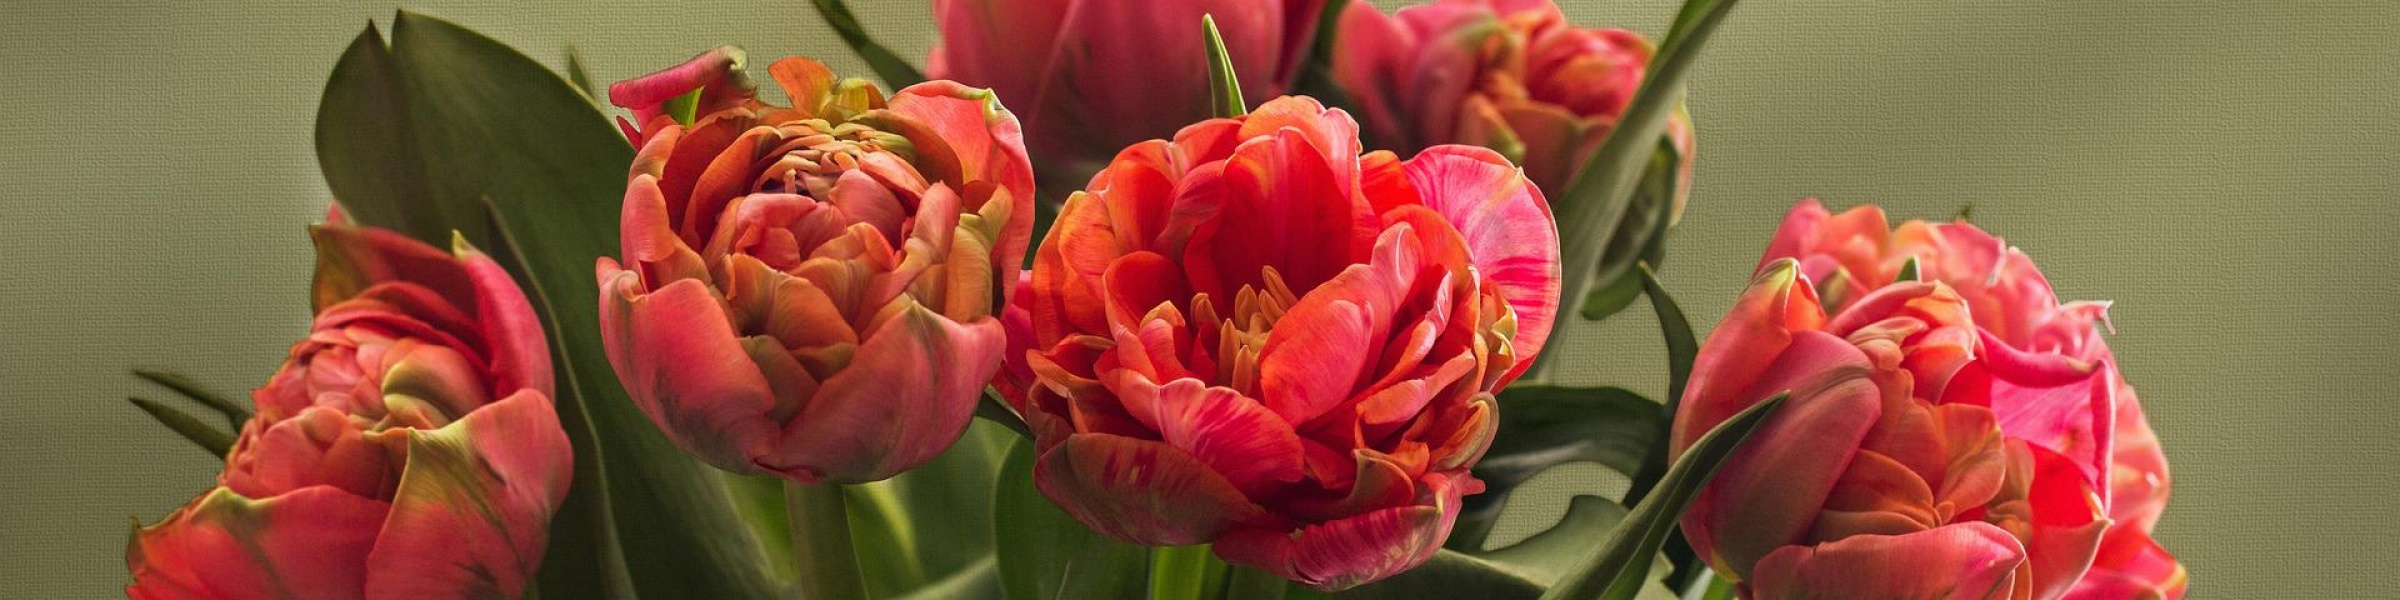 Tulipány v nabídce